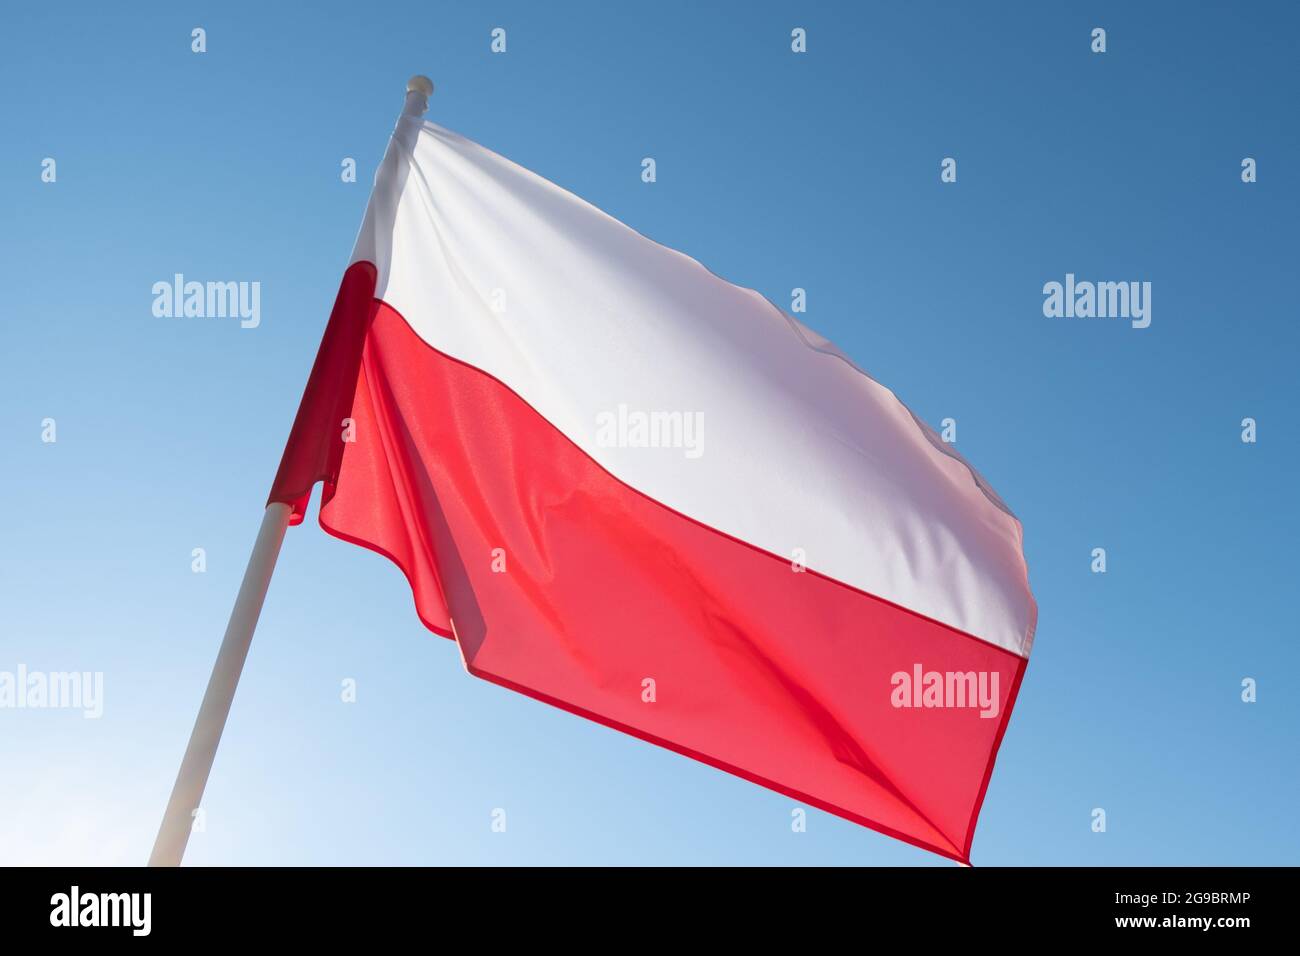 Drapeau de la Pologne sur fond bleu ciel. Drapeau polonais agitant dans le vent et la lumière du soleil Banque D'Images